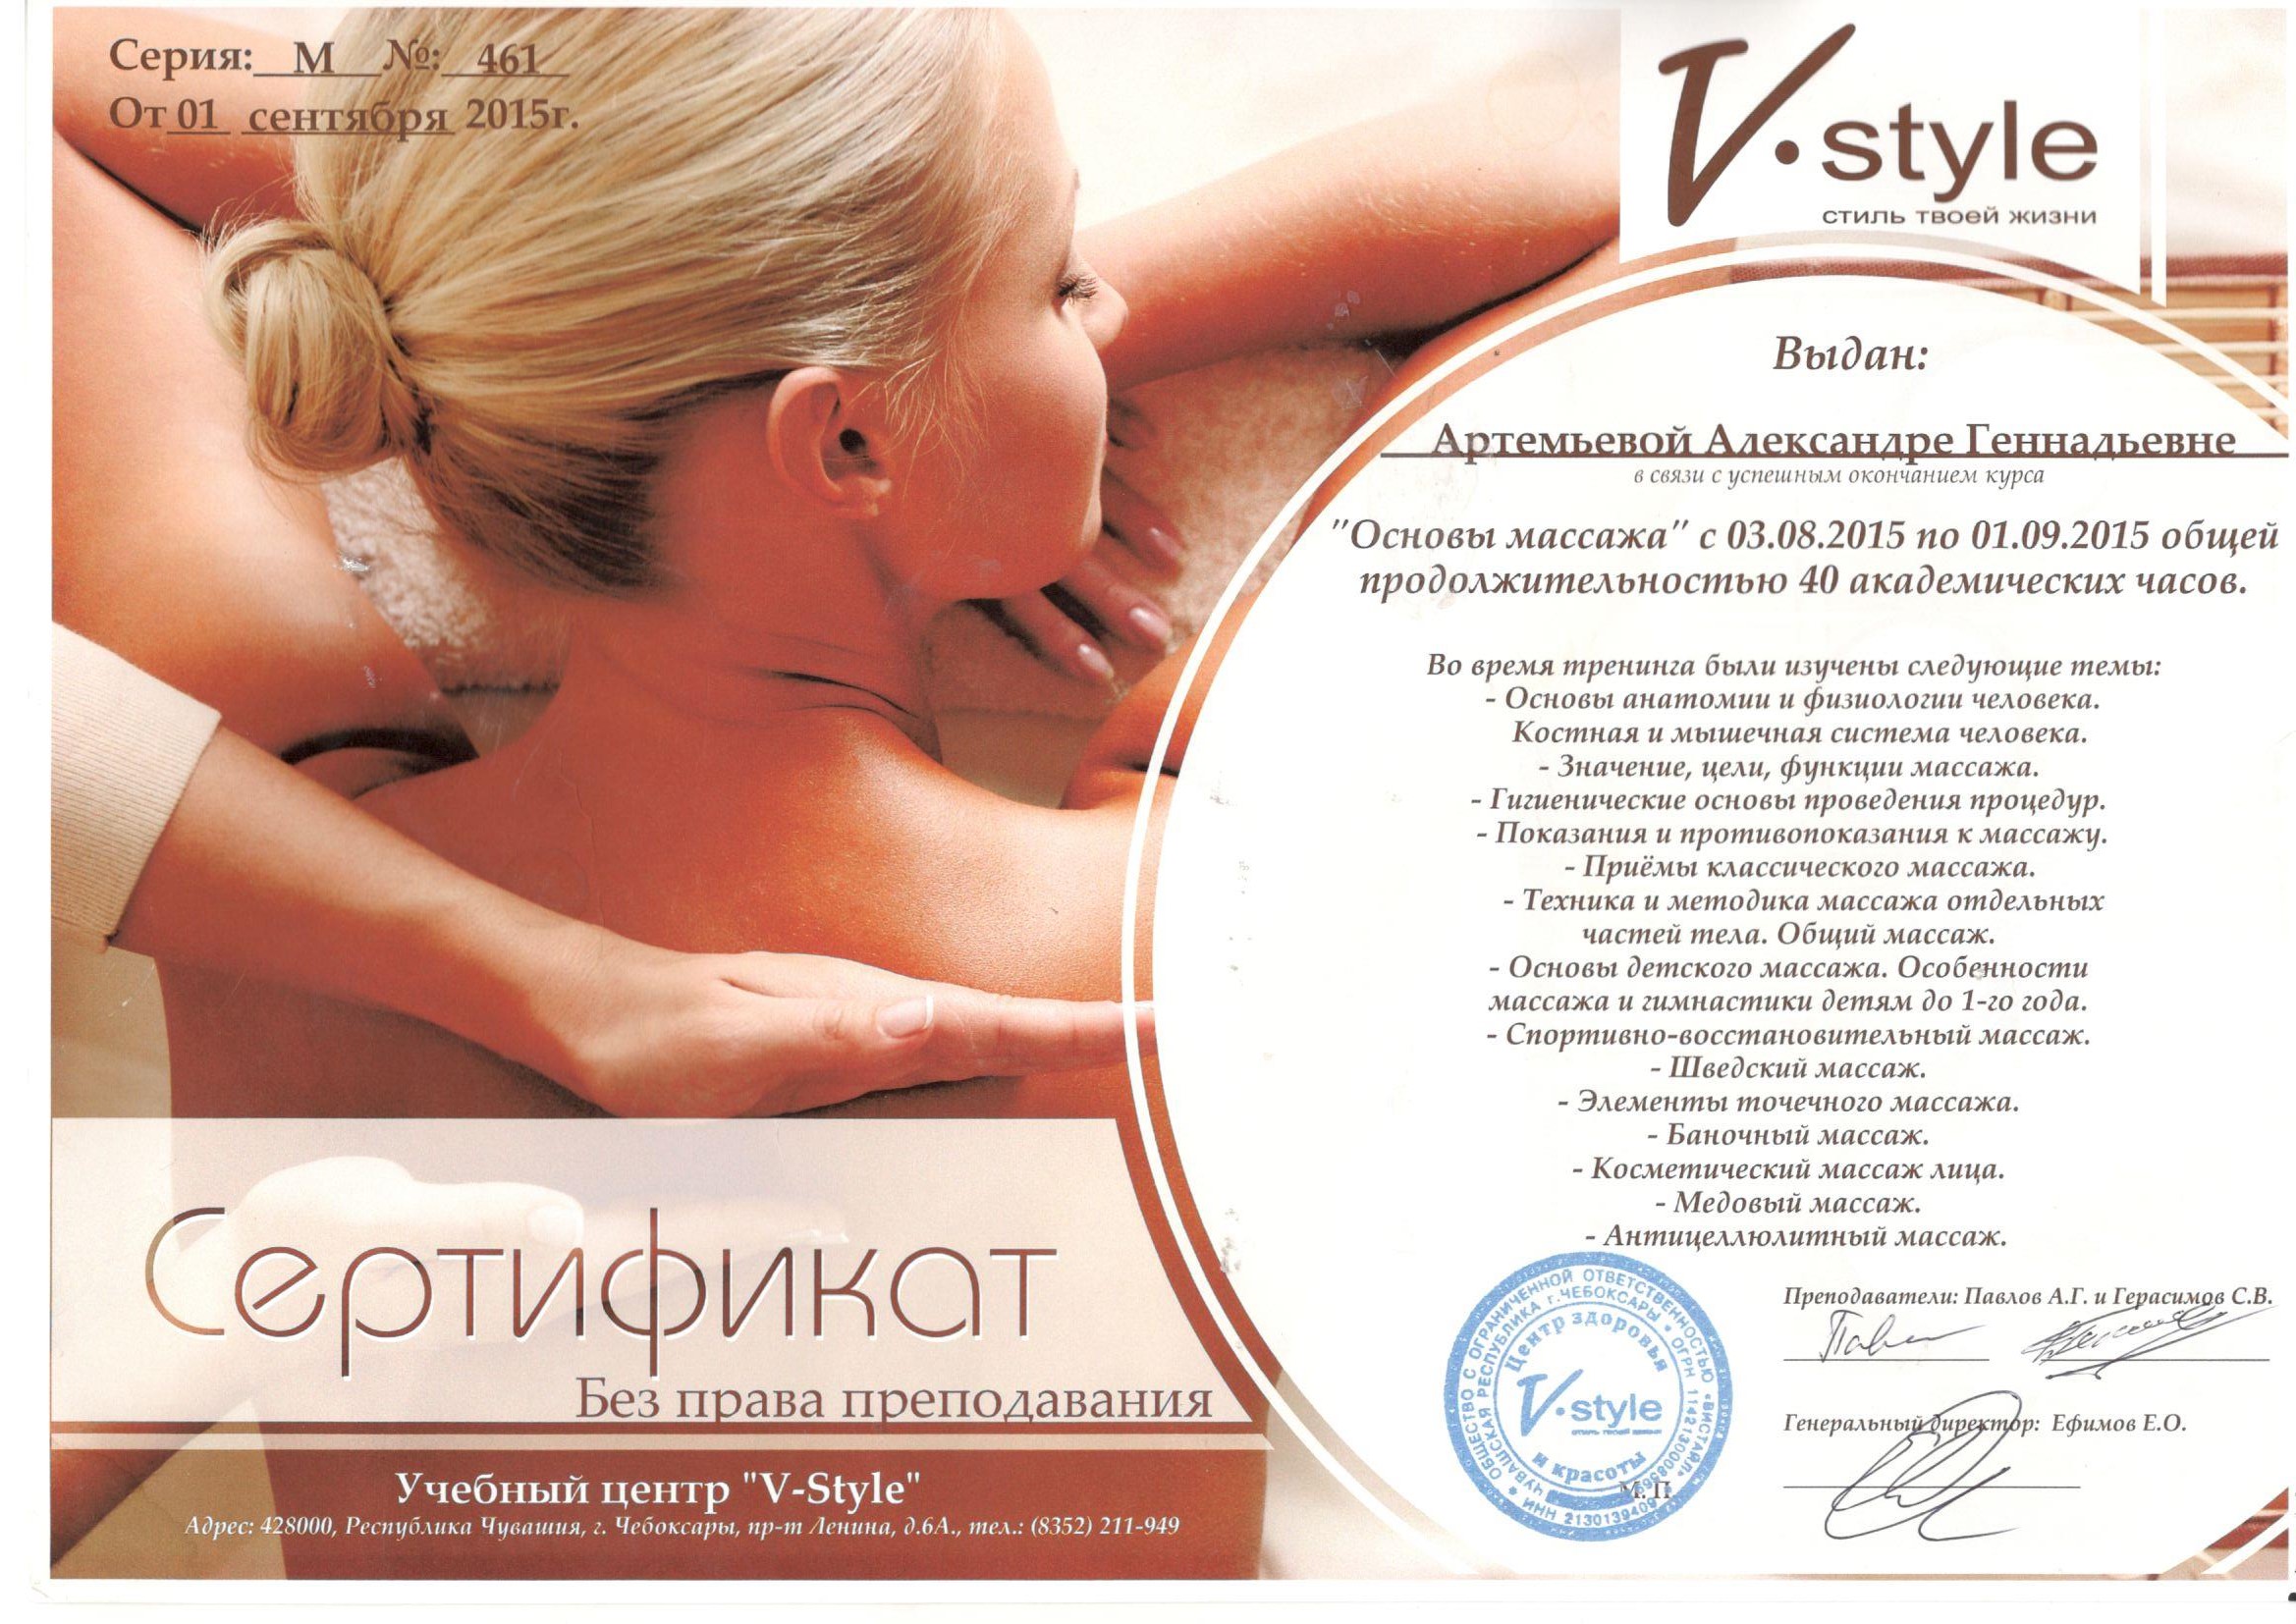 Сертификат об обучении массажу лица